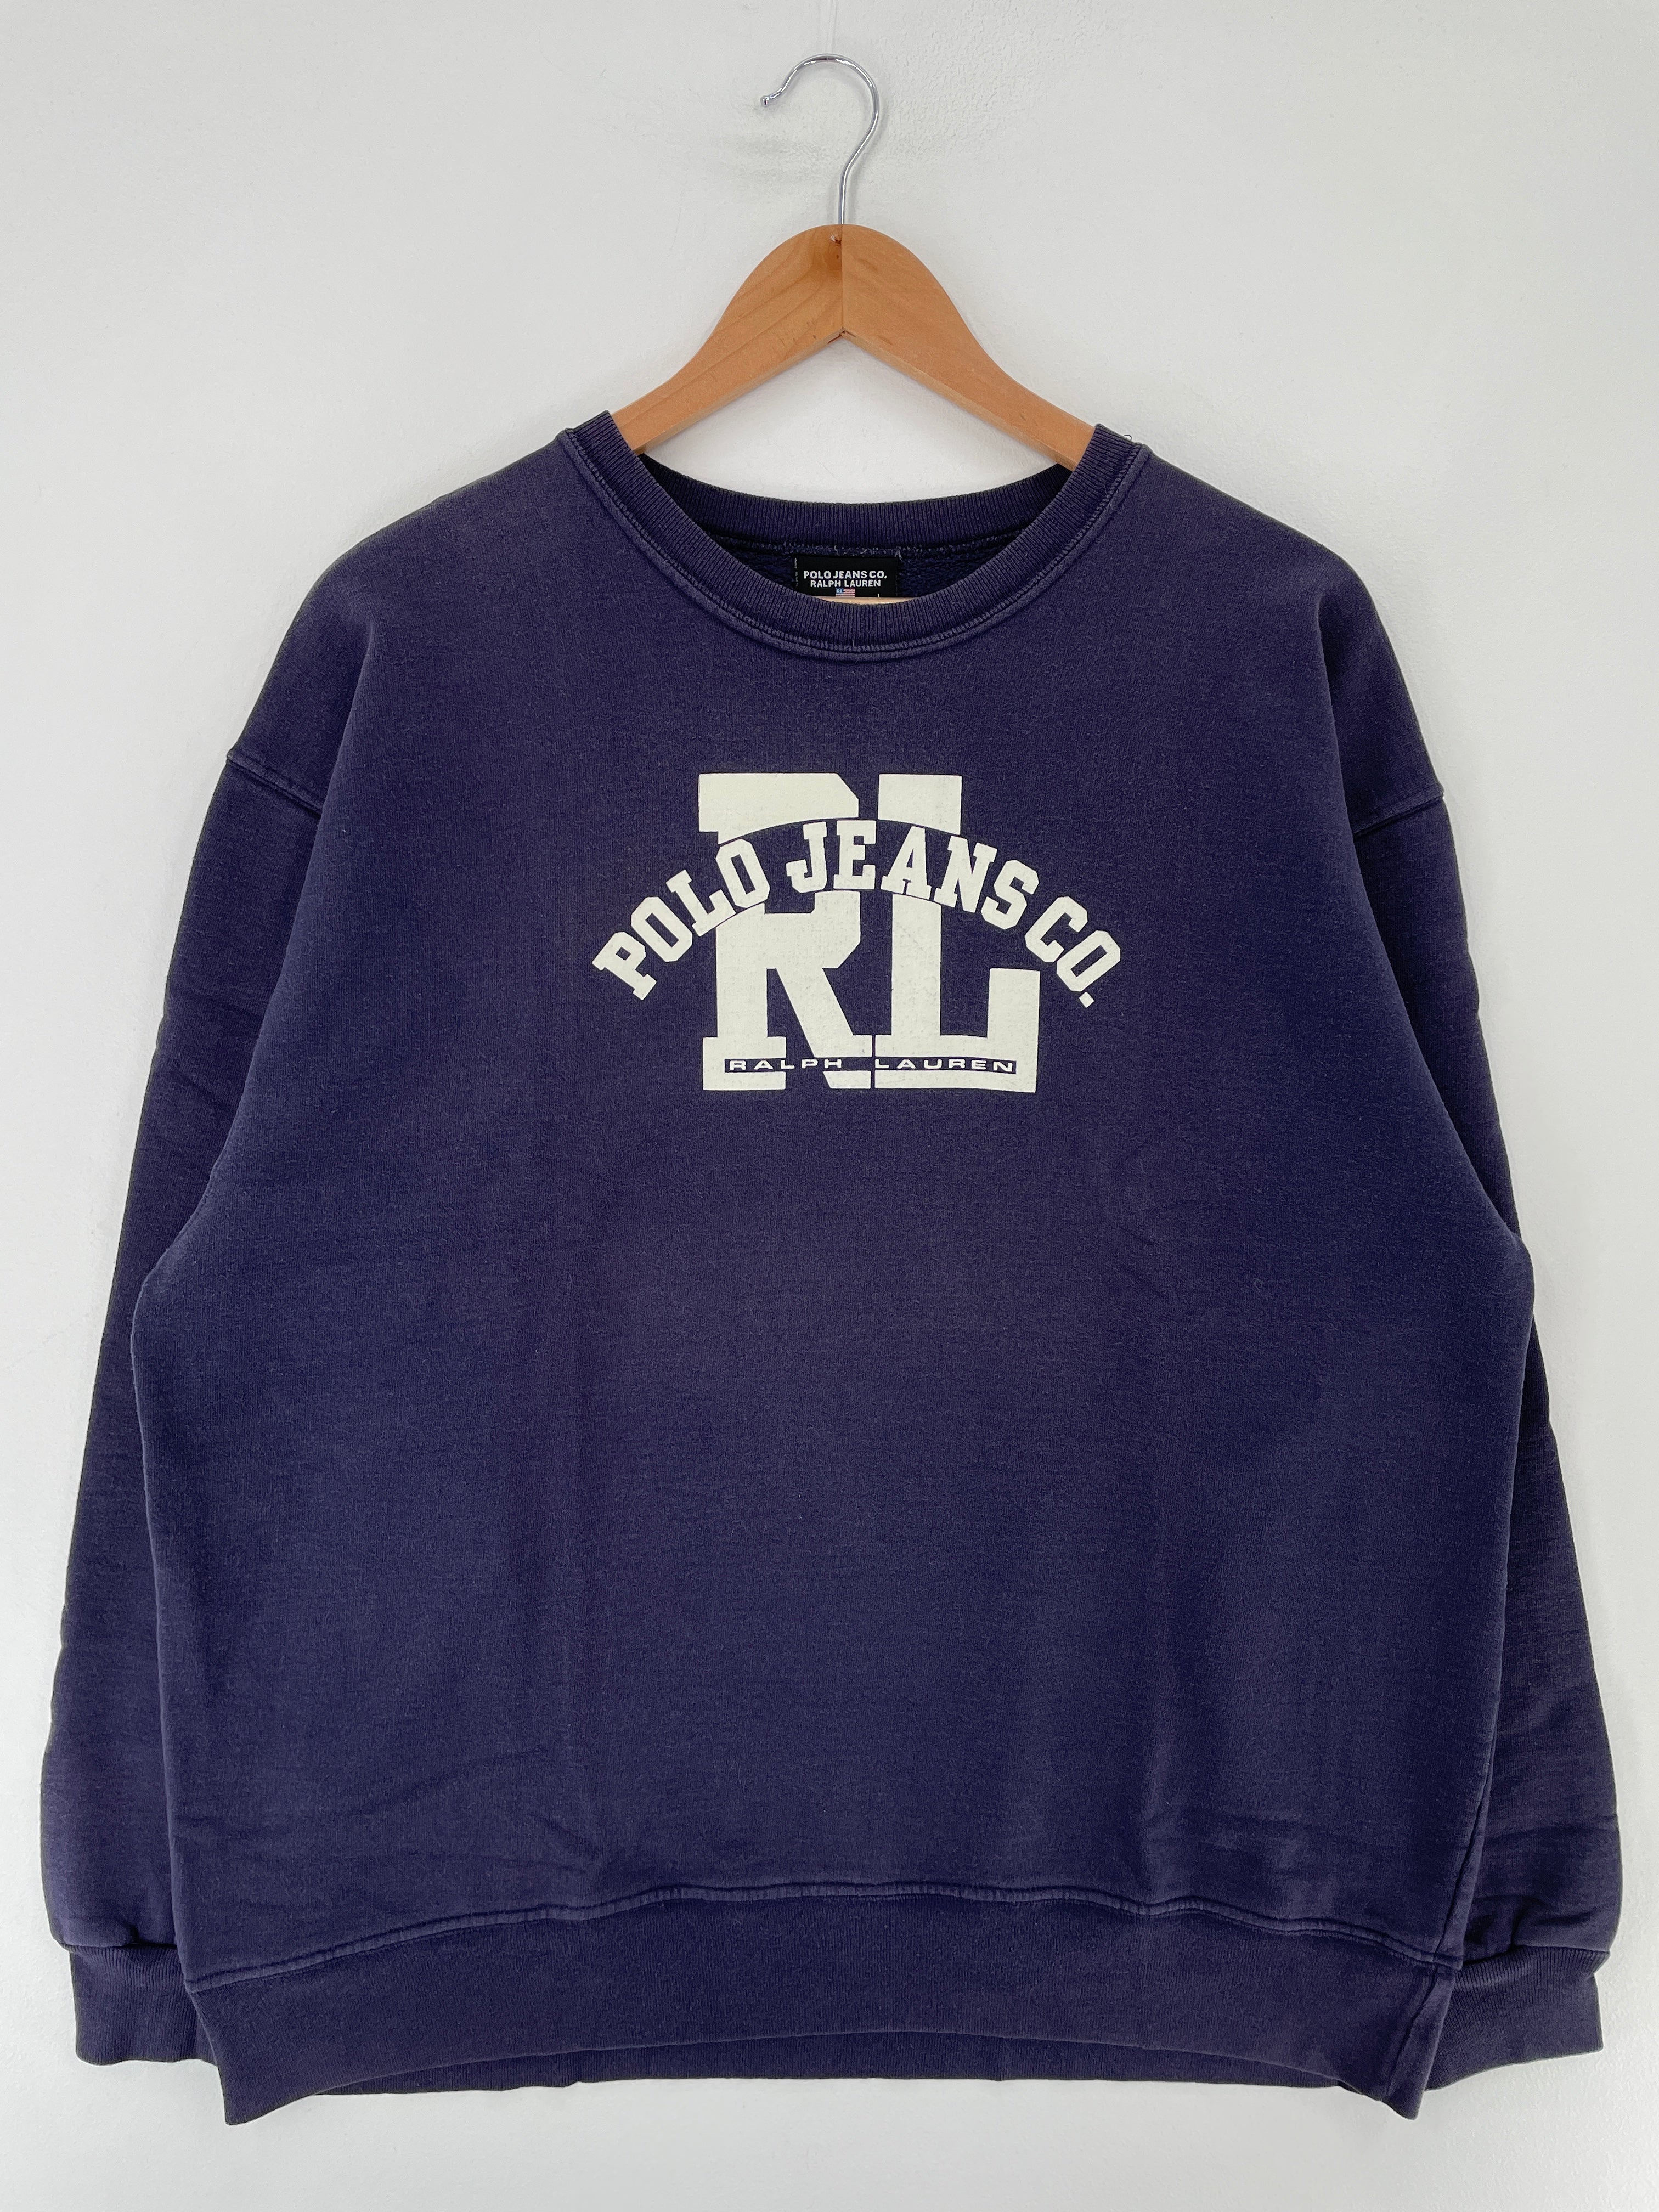 Vintage Polo Ralph Lauren Crewneck Sweatshirt